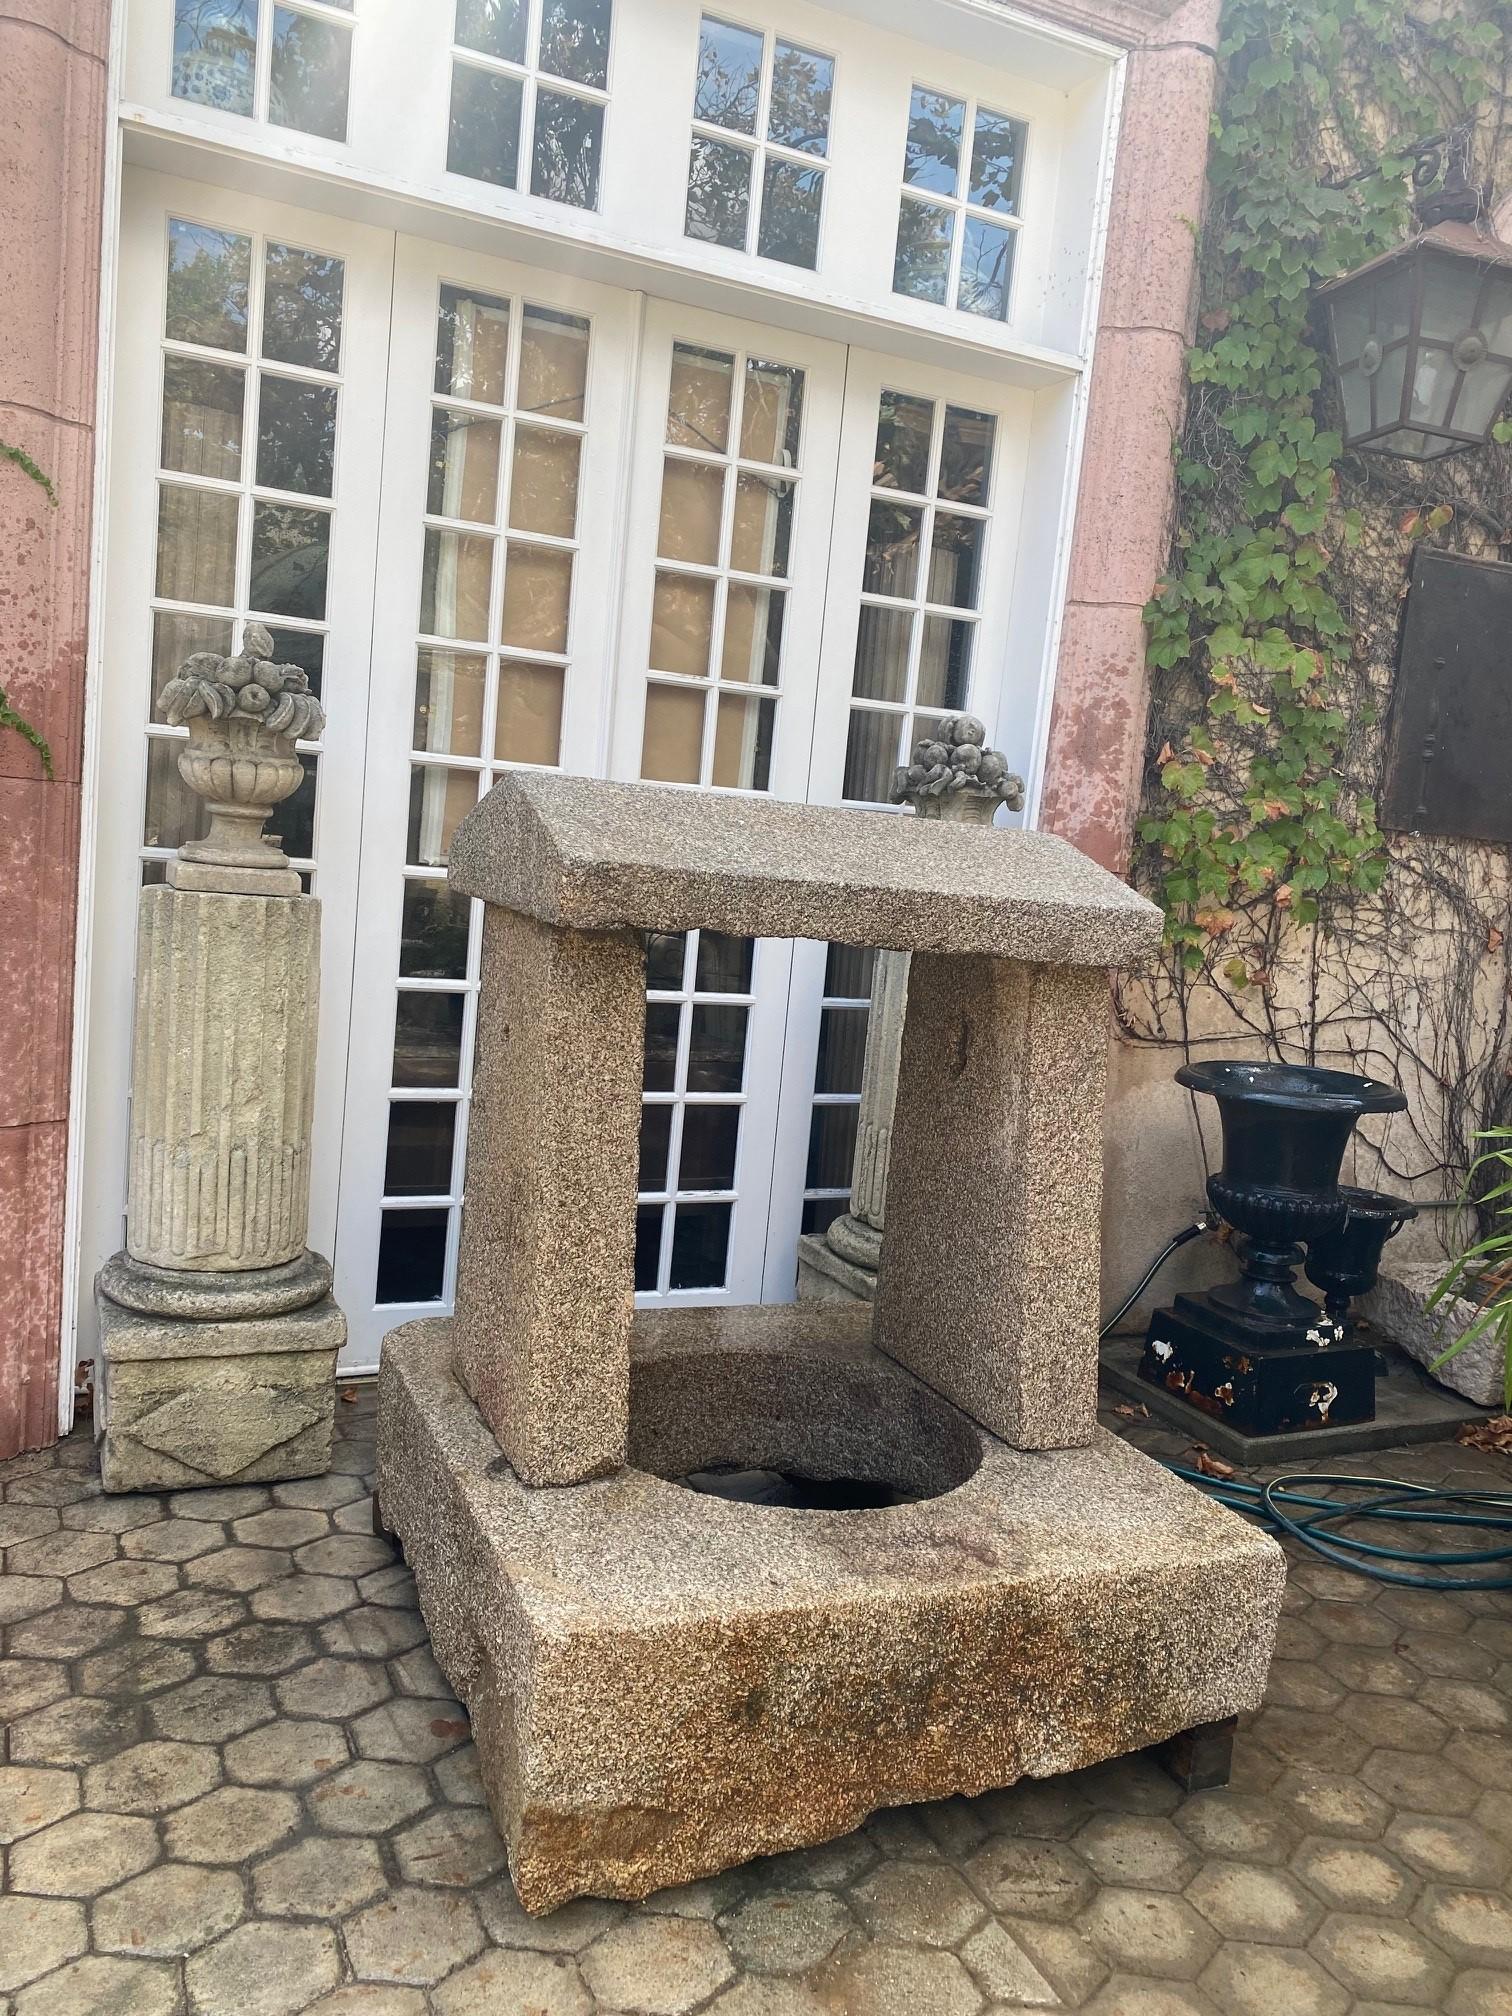 Tête de puits en pierre sculptée à la main fontaine ou montage mural bassin antique foyer . Un beau granit sculpté à la main à la fin du 18e siècle - début du 19e siècle, de forme carrée avec des blocs de pierre en forme de niche. Des formes